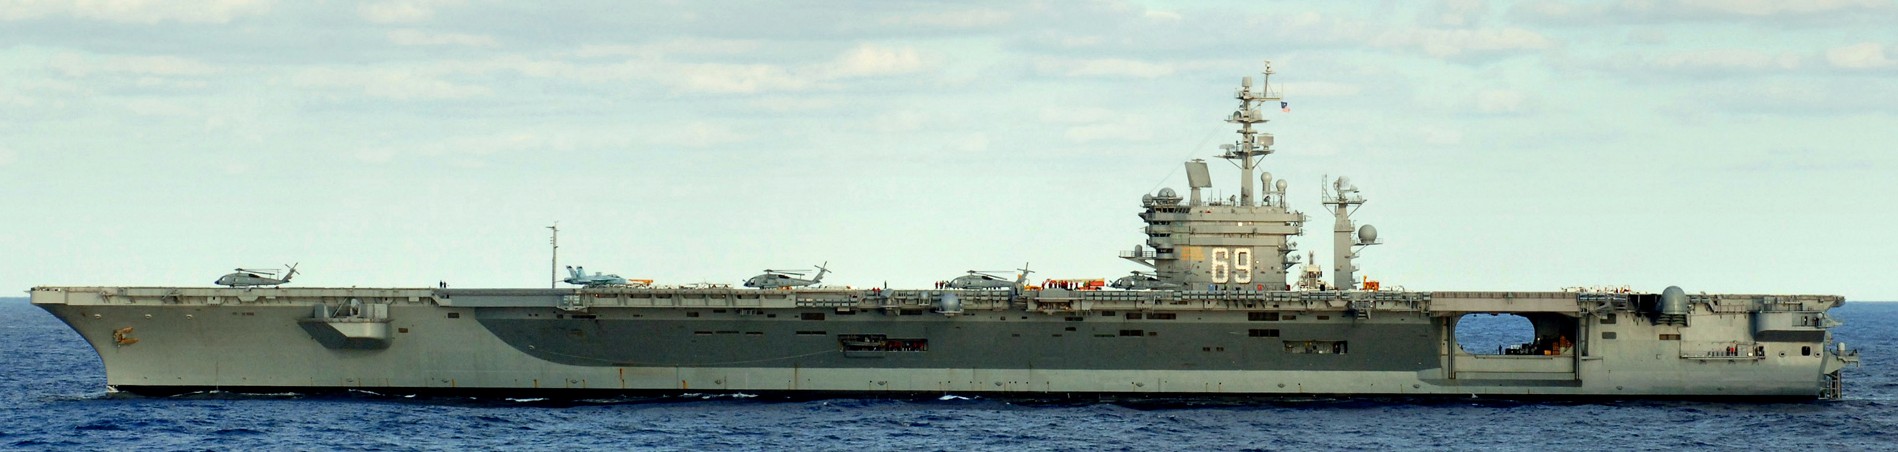 uss dwight d. eisenhower cvn-69 aircraft carrier 2005 219